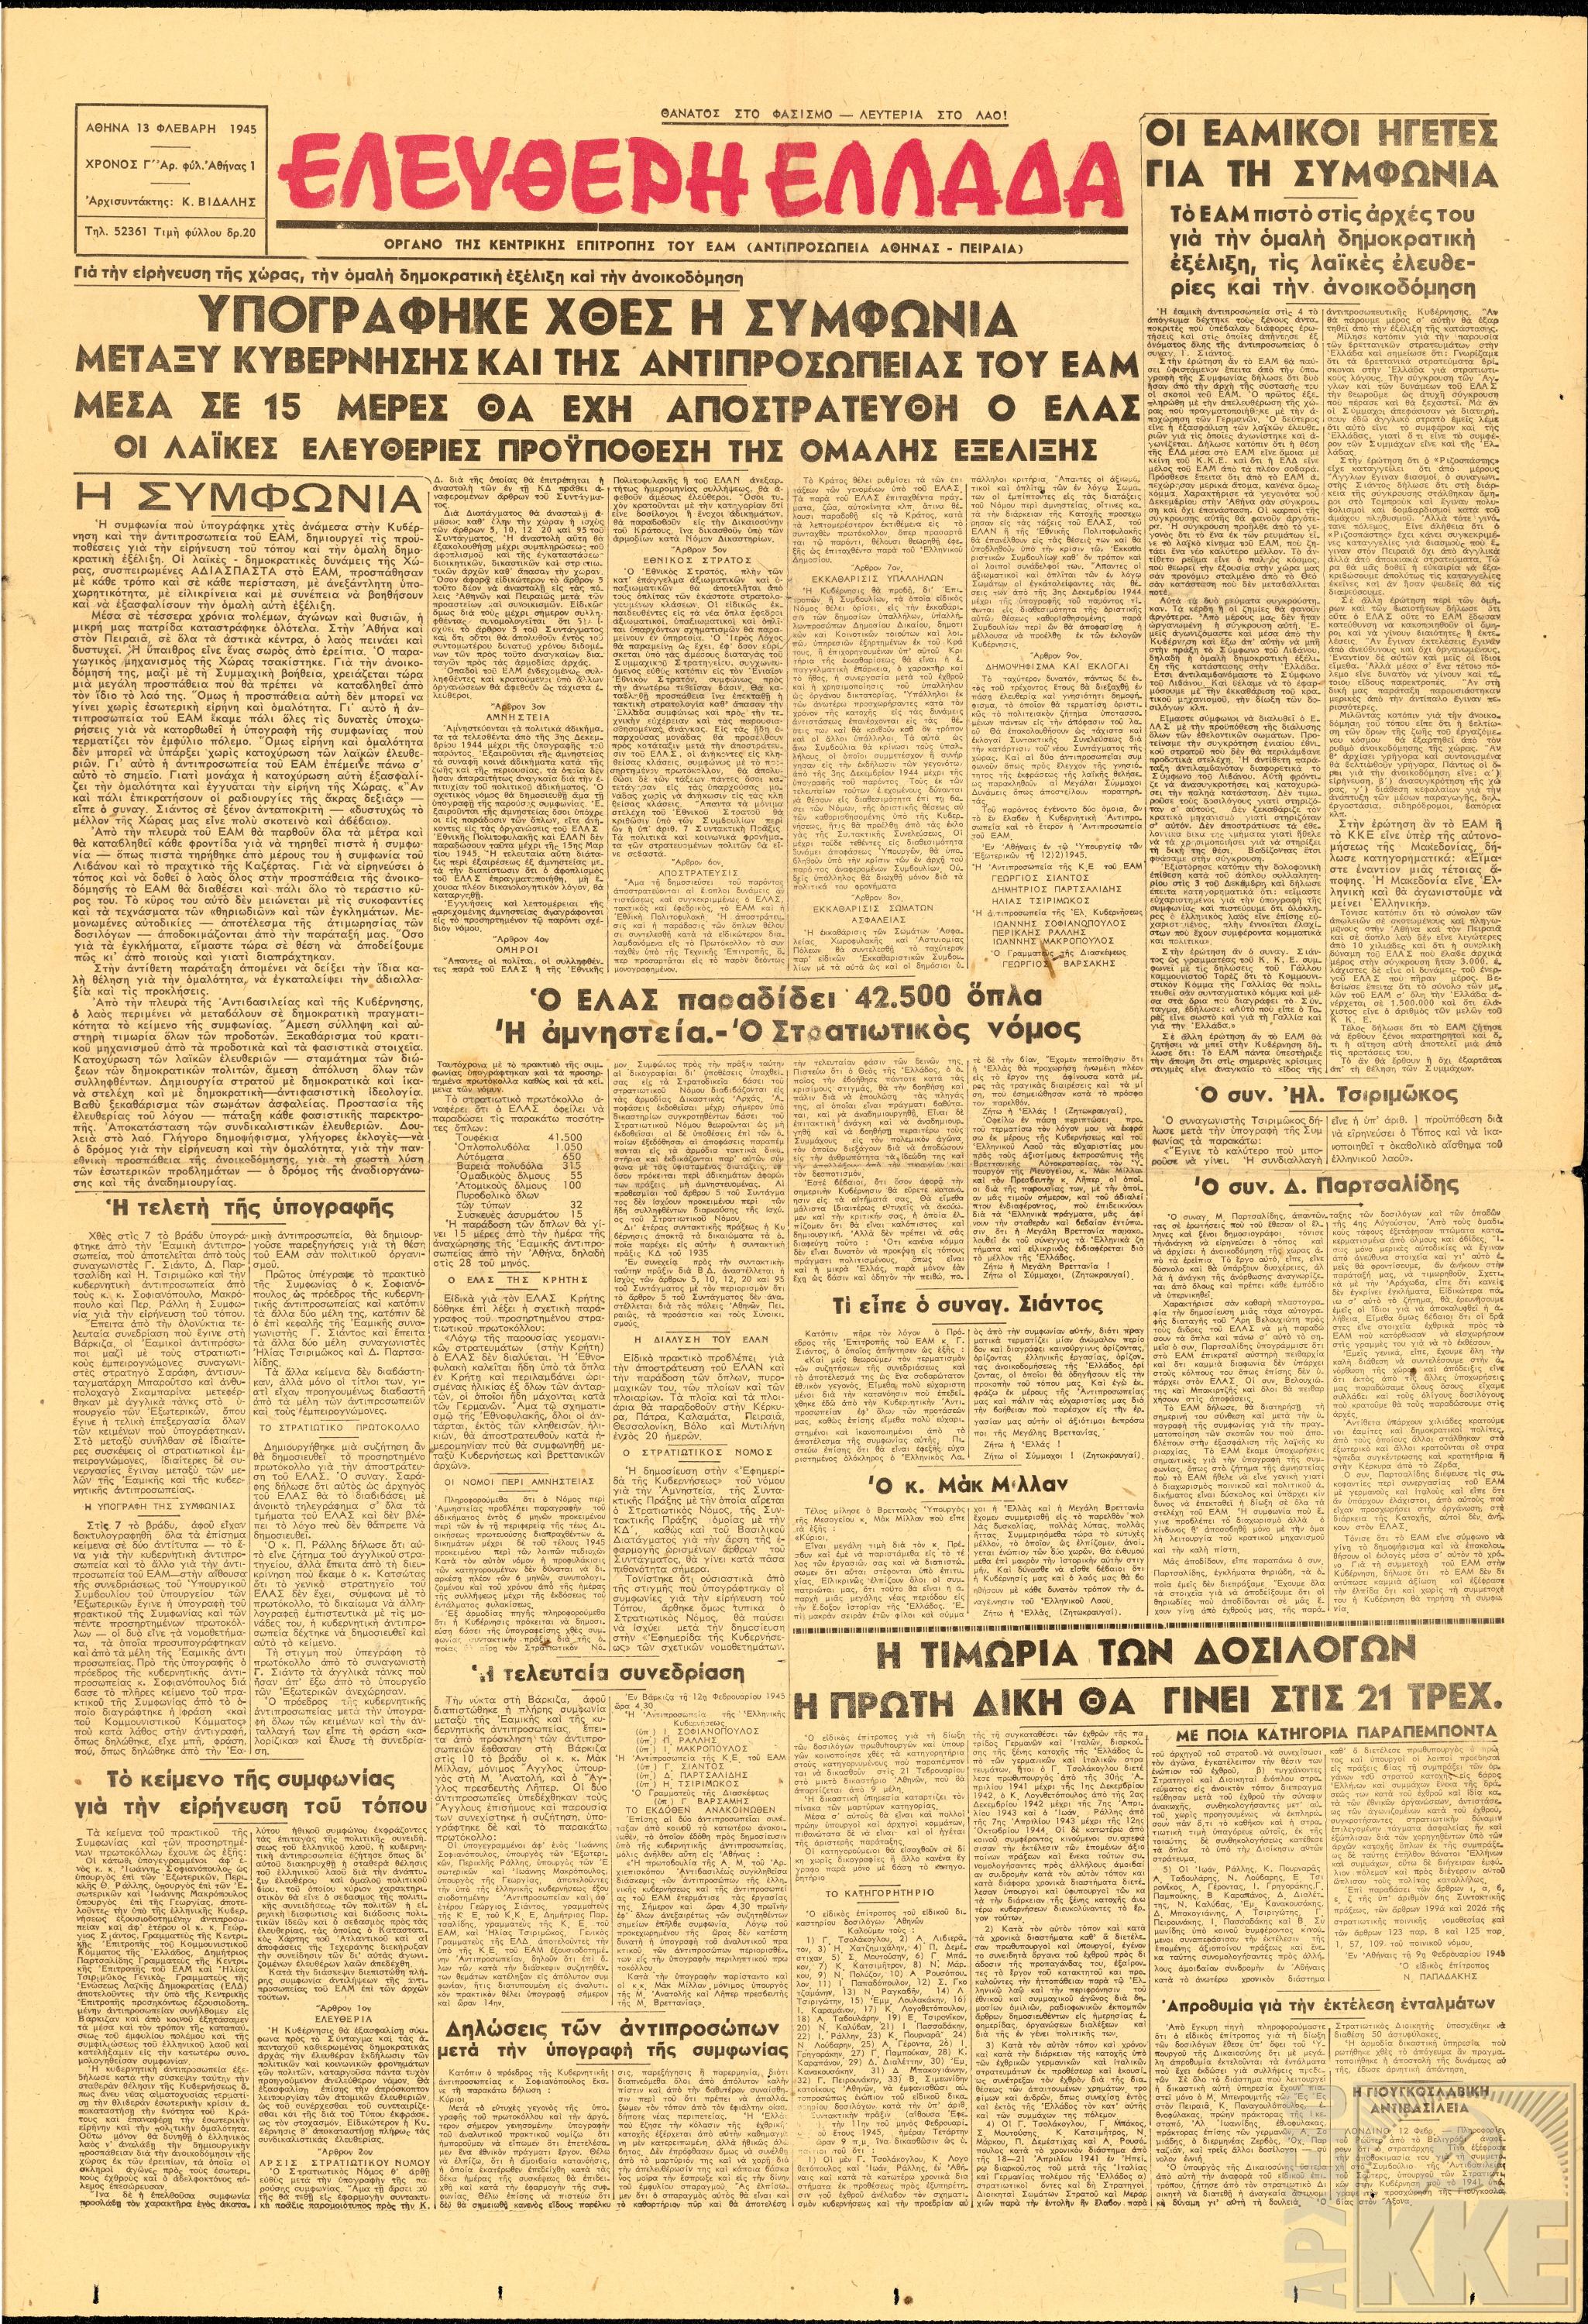 Το πρωτοσέλιδο της εφημερίδας “Ελεύθερη Ελλάδα” στις 13 Φλεβάρη 1945